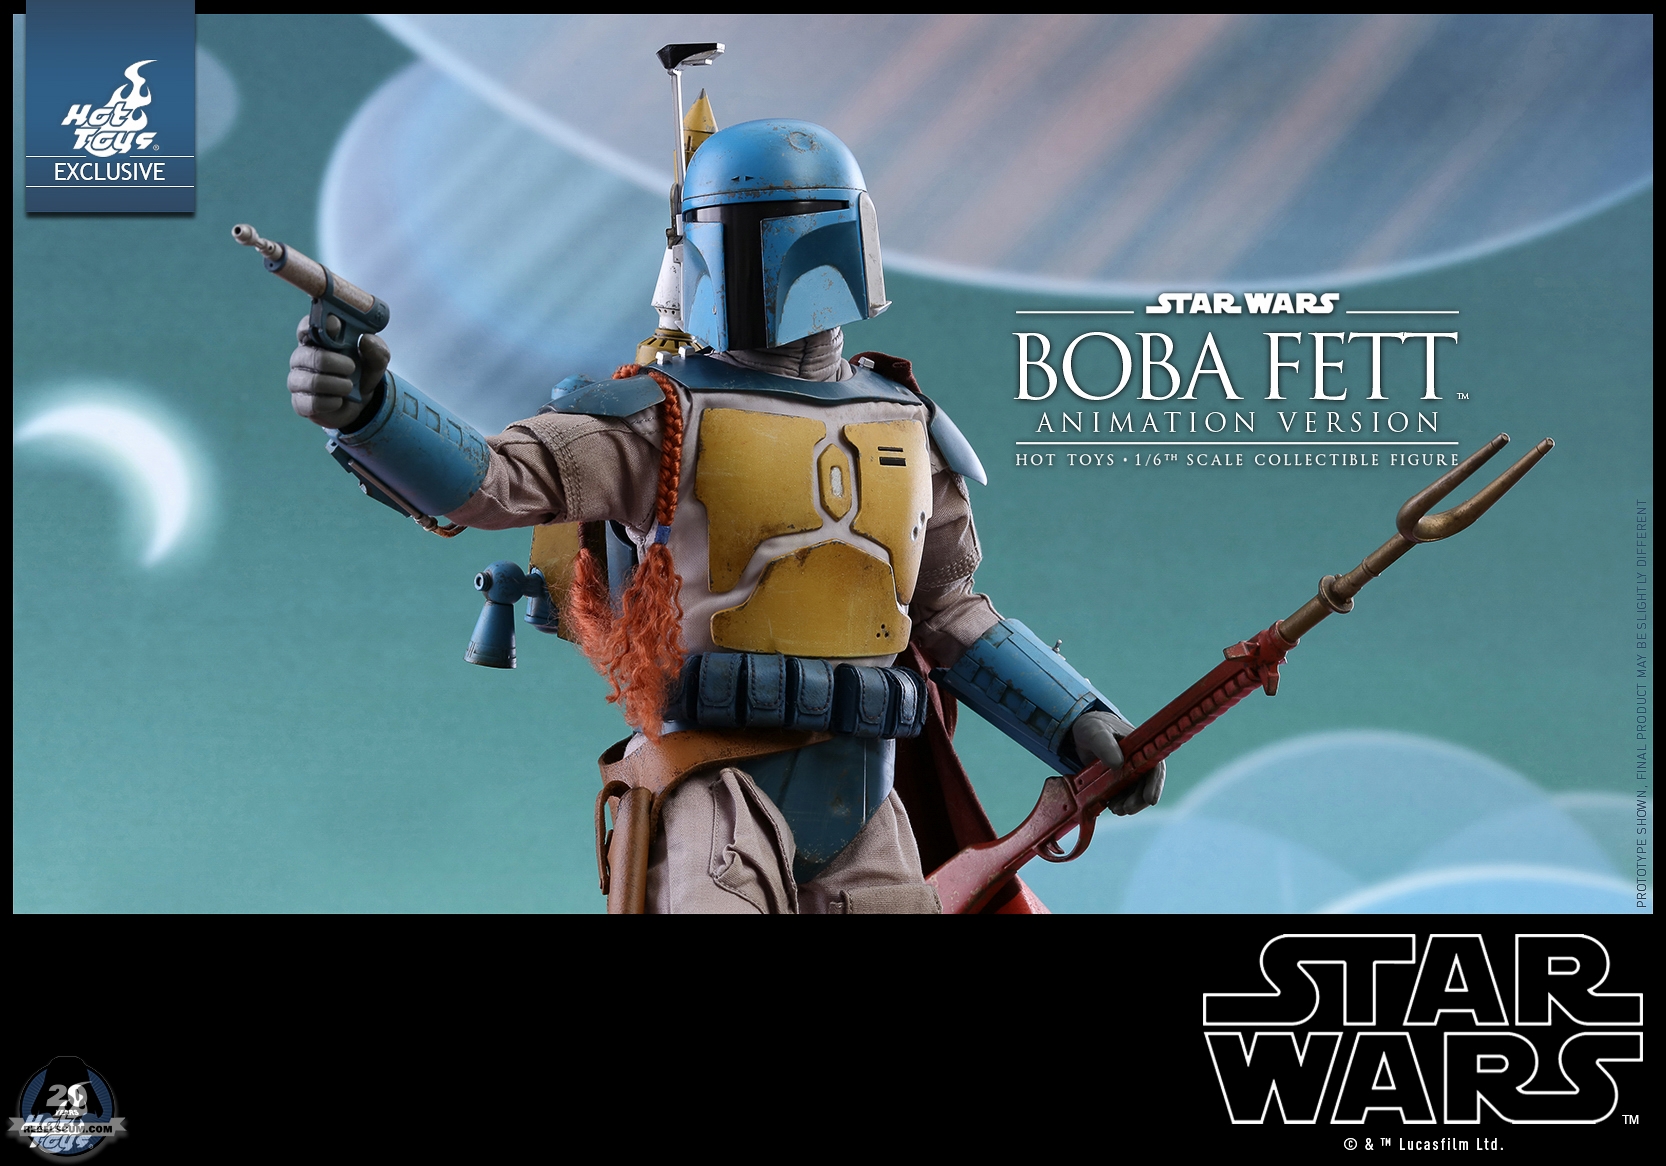 Hot-Toys-TMS006-Star-Wars-Boba-Fett-Animation-Version-014.jpg